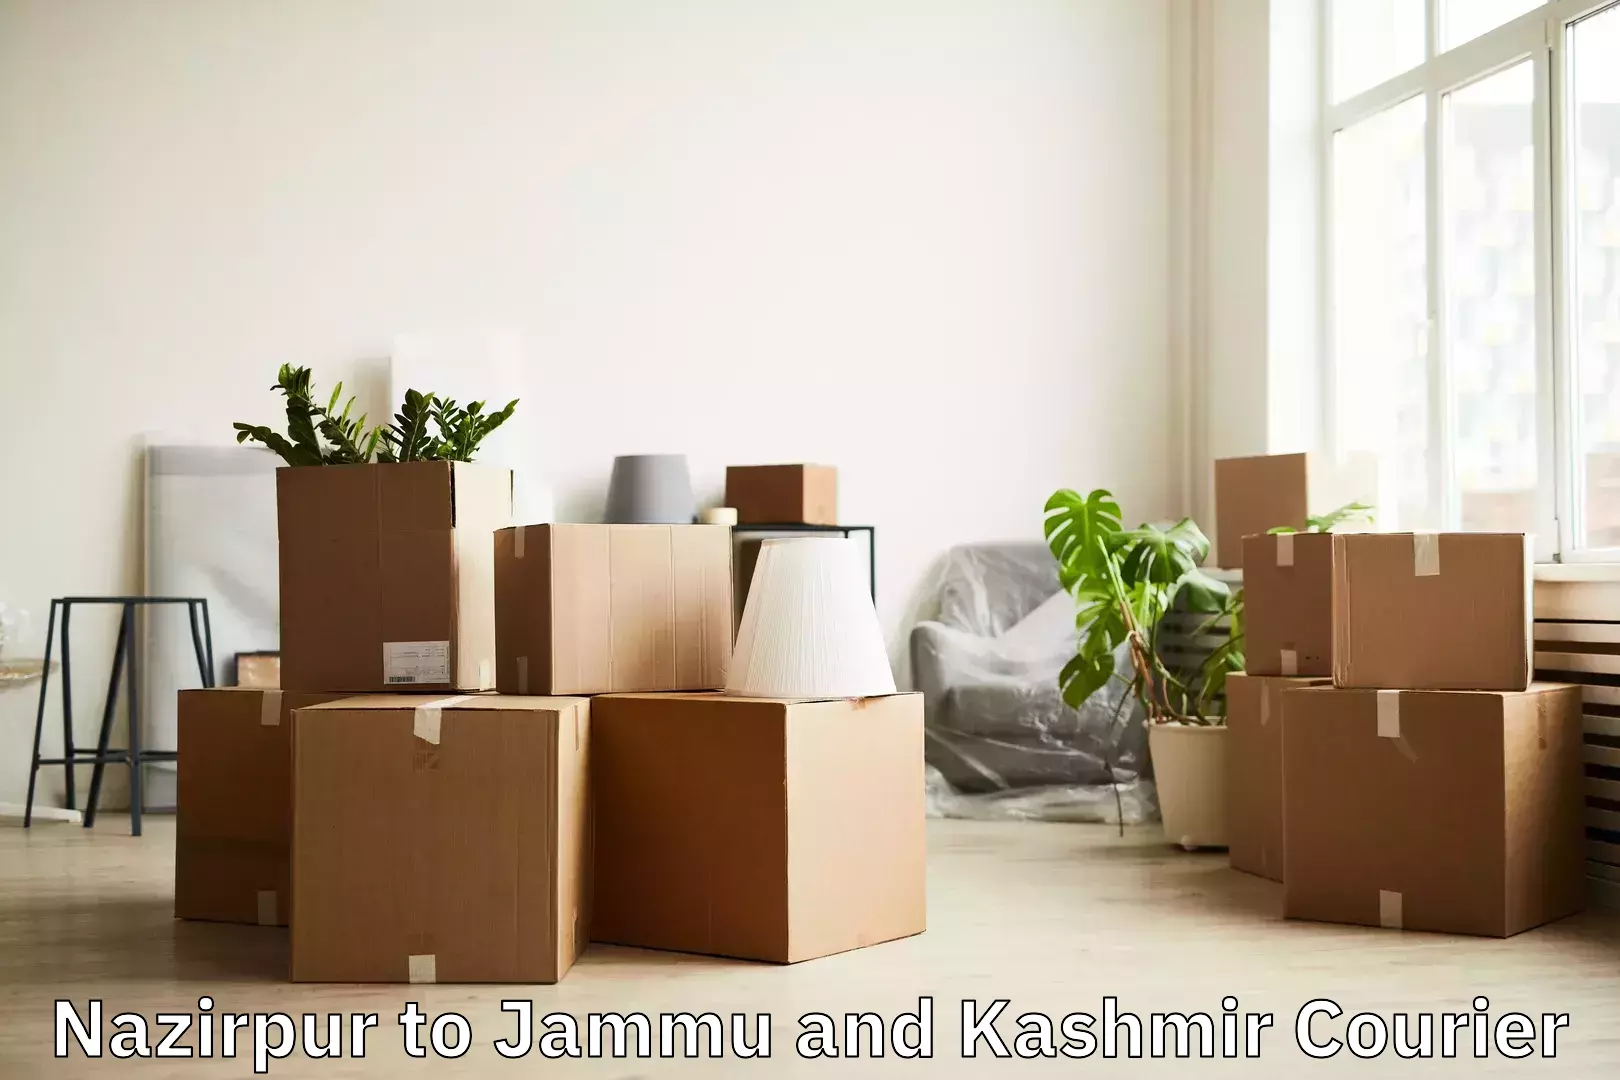 Baggage shipping service Nazirpur to Srinagar Kashmir